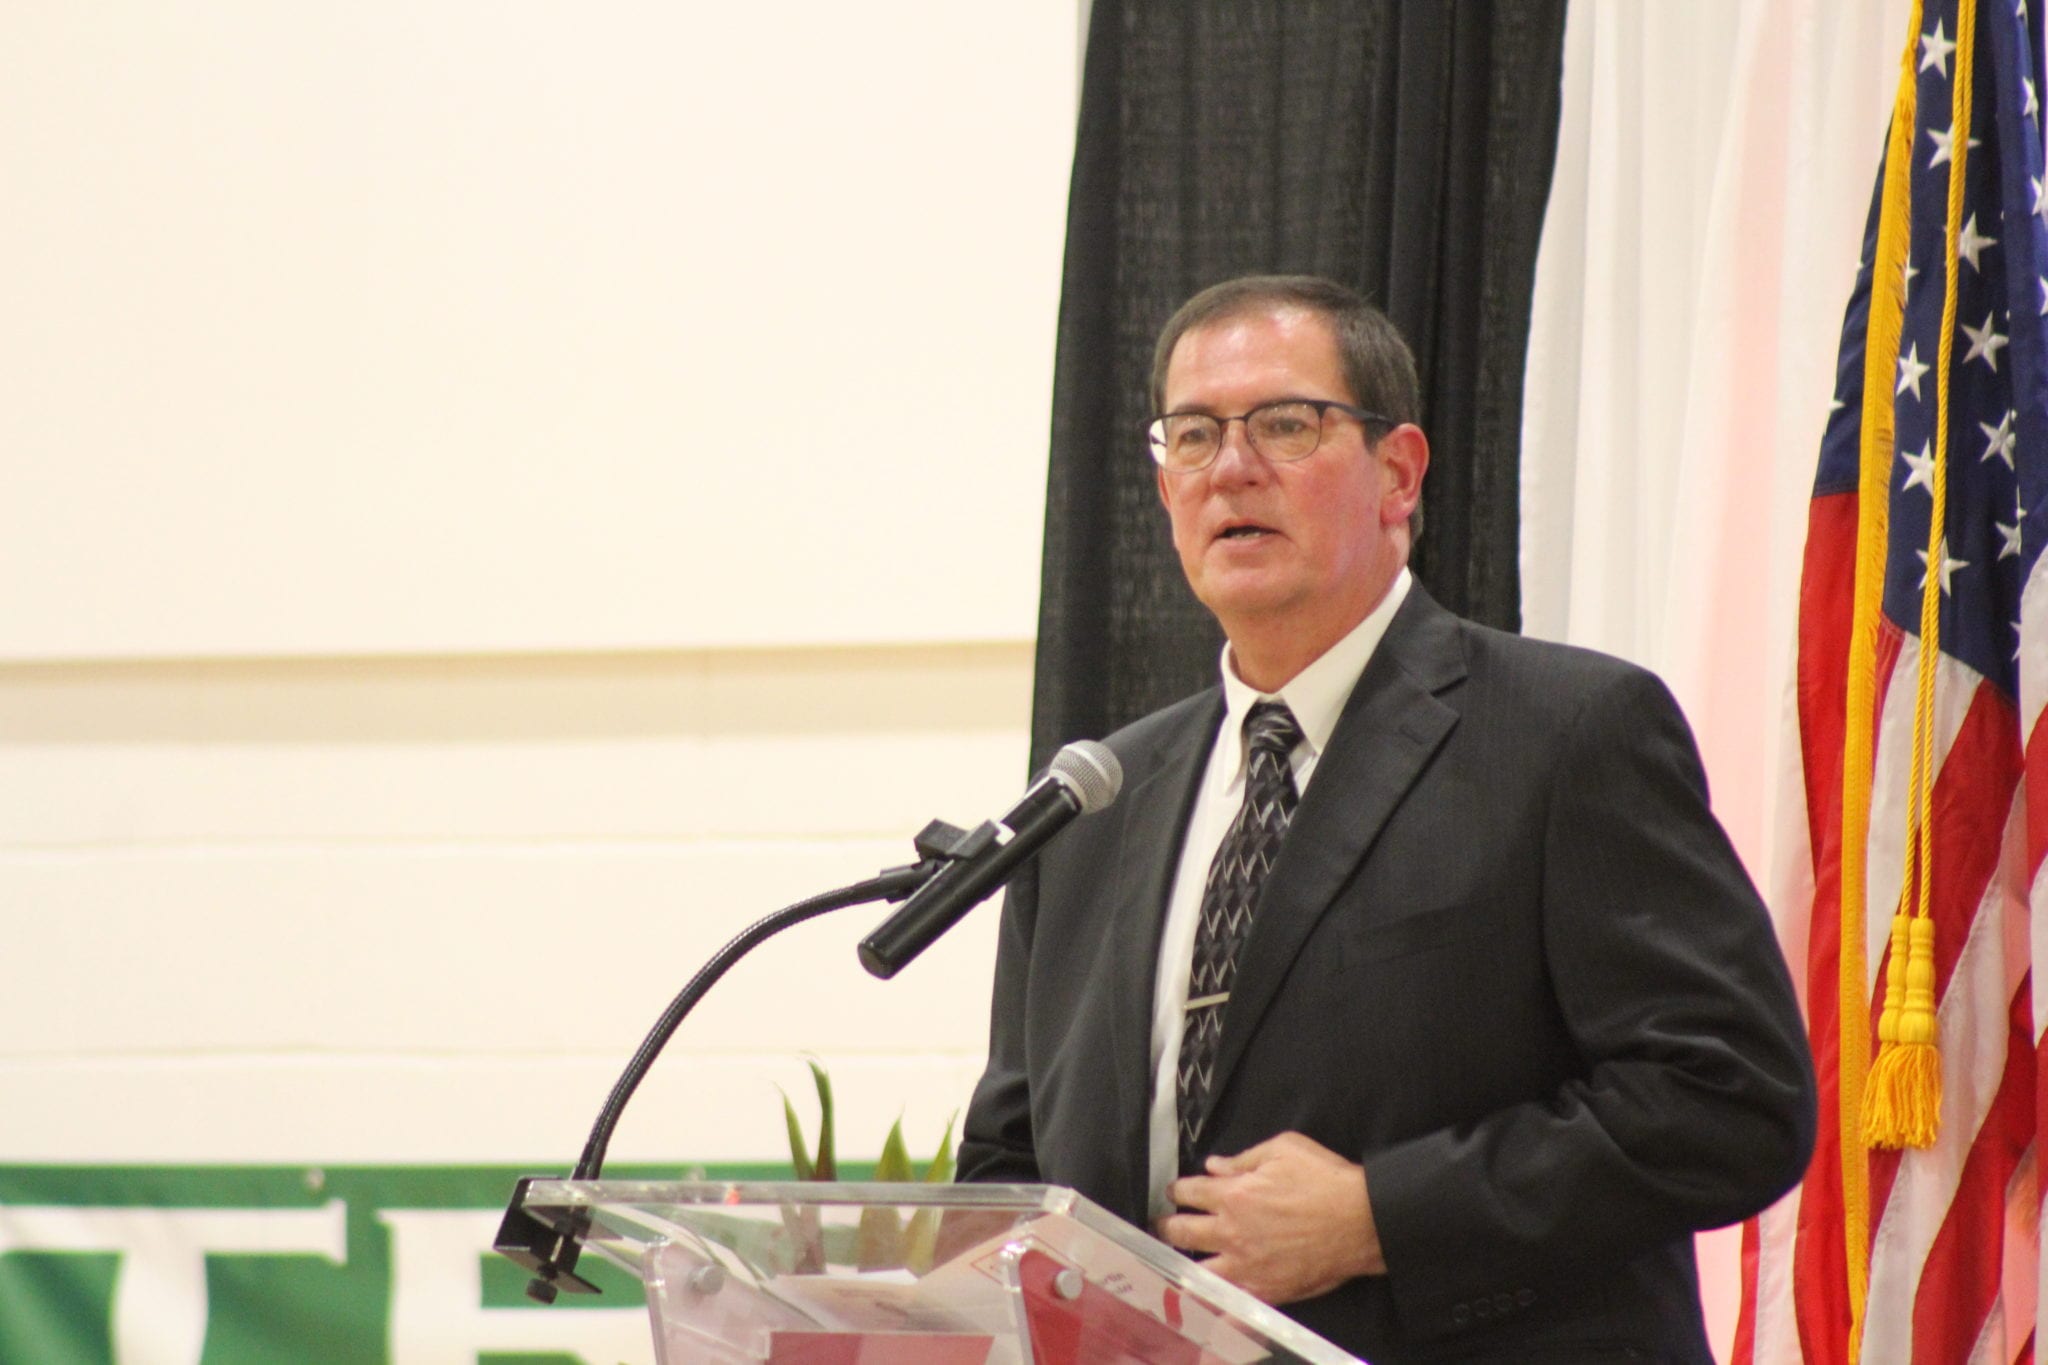 Sadye Gibbs Martin honored in community center dedication event | Plant ...